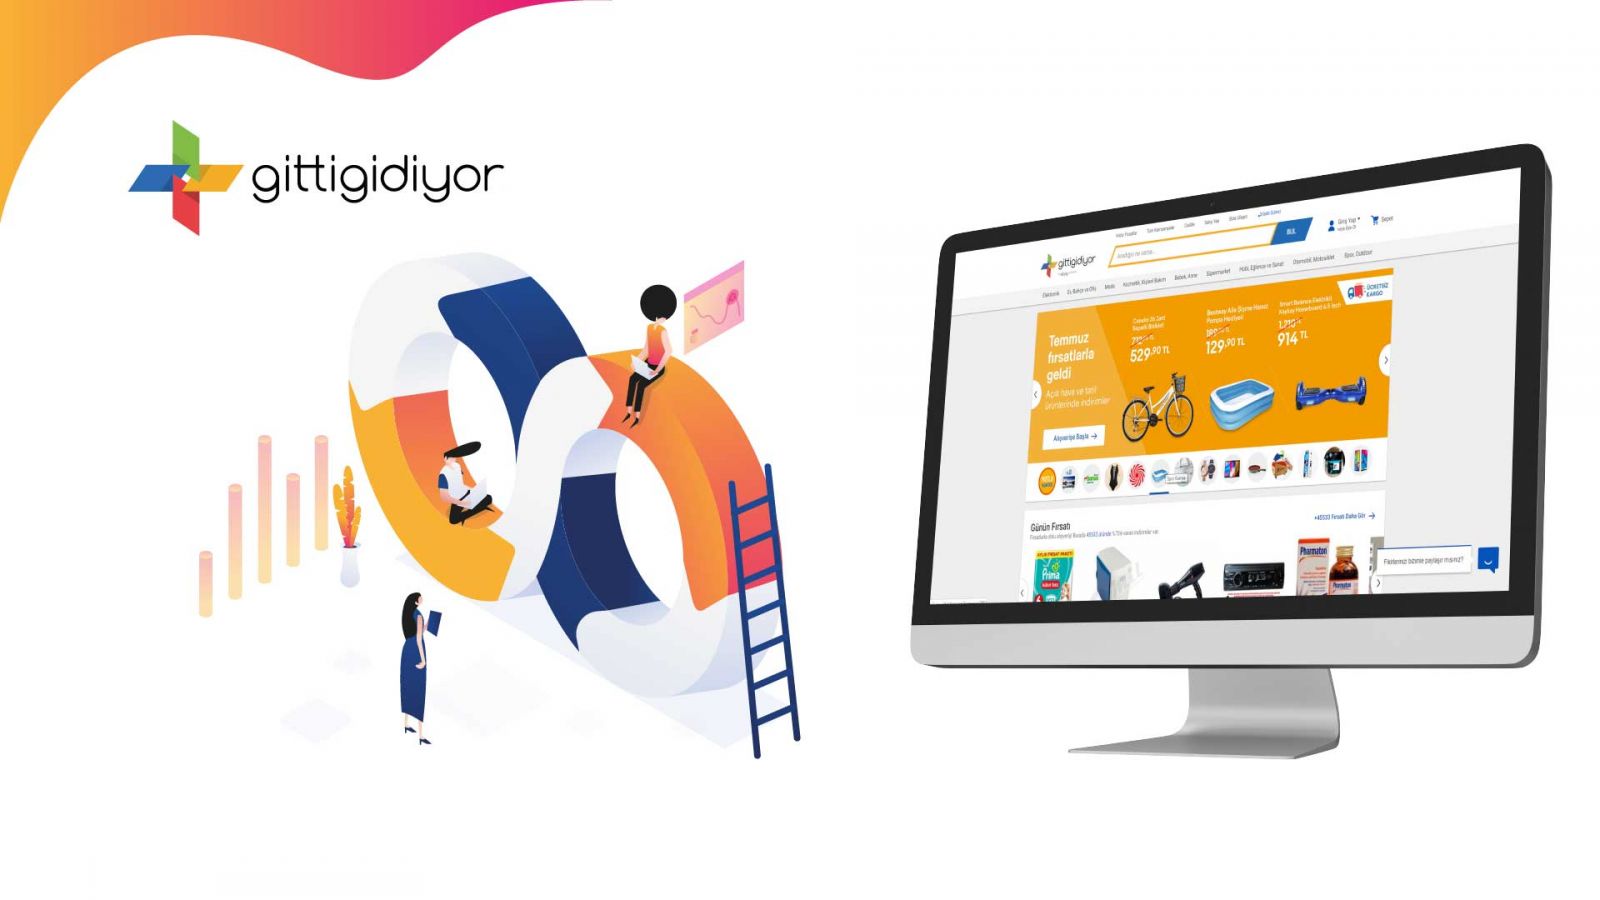 اپلیکیشن و وب سایت GittiGidiyor